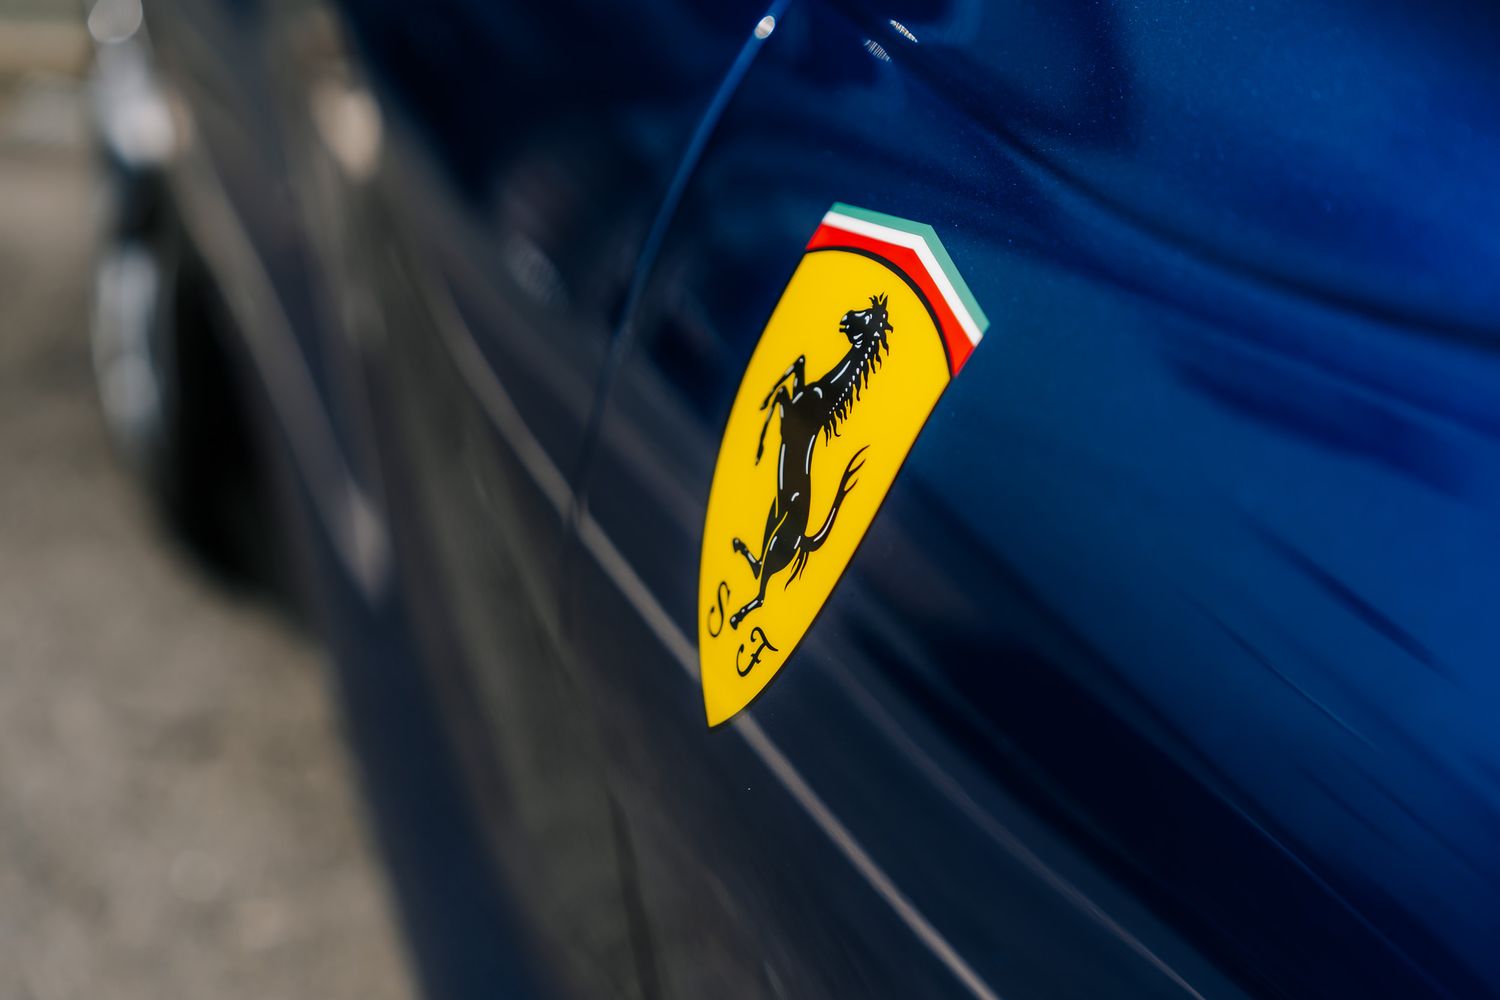 Ferrari 812 Superfast GTS